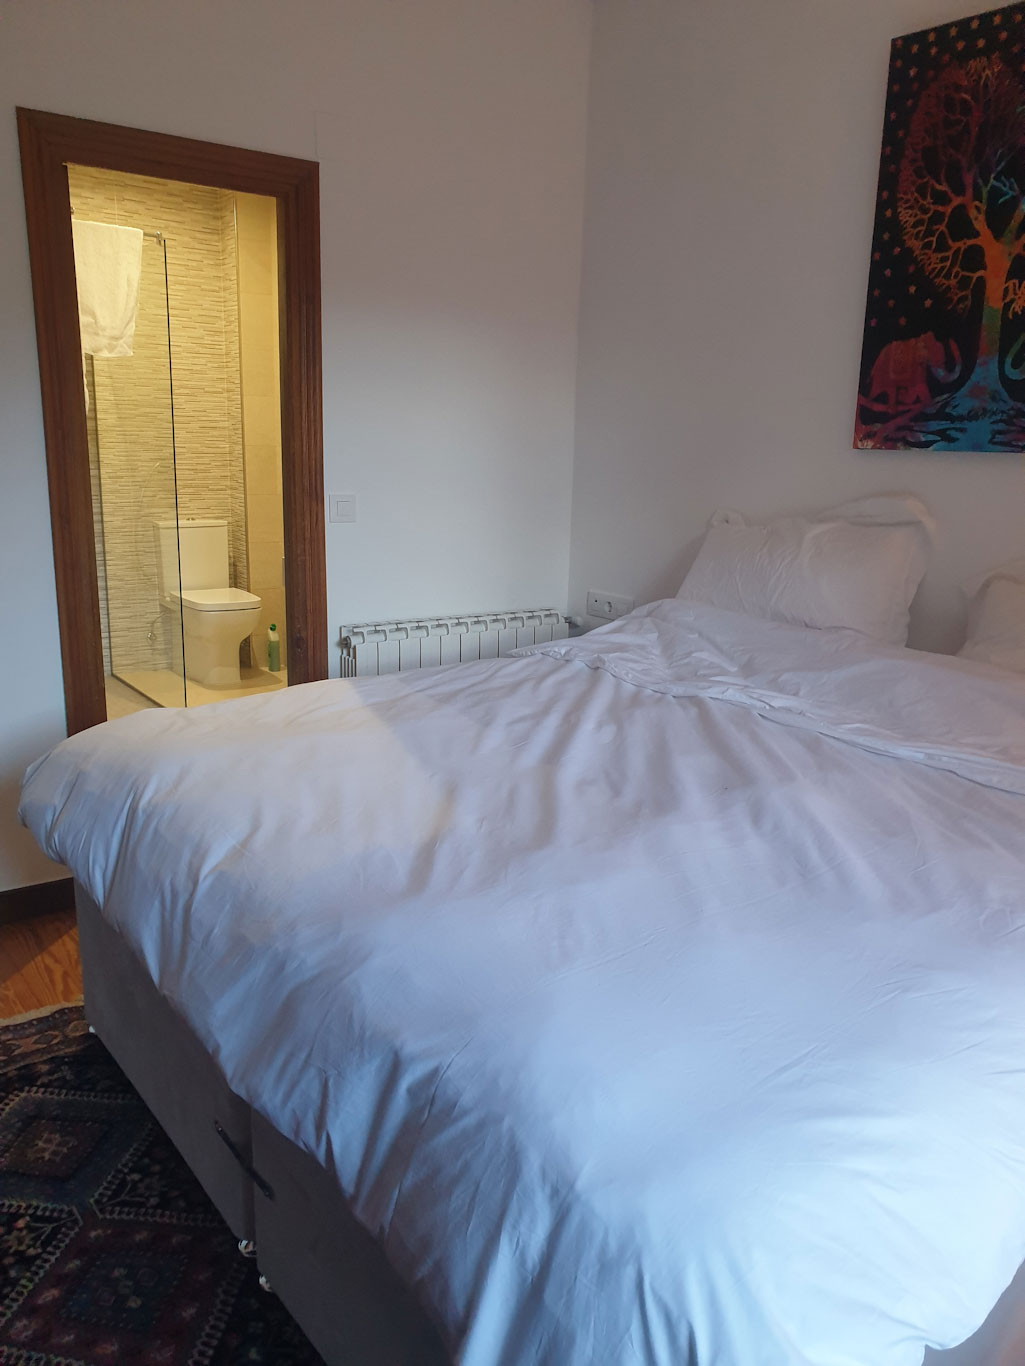 A bedroom at Casa Agara accommodation, near Bilbao, Spain